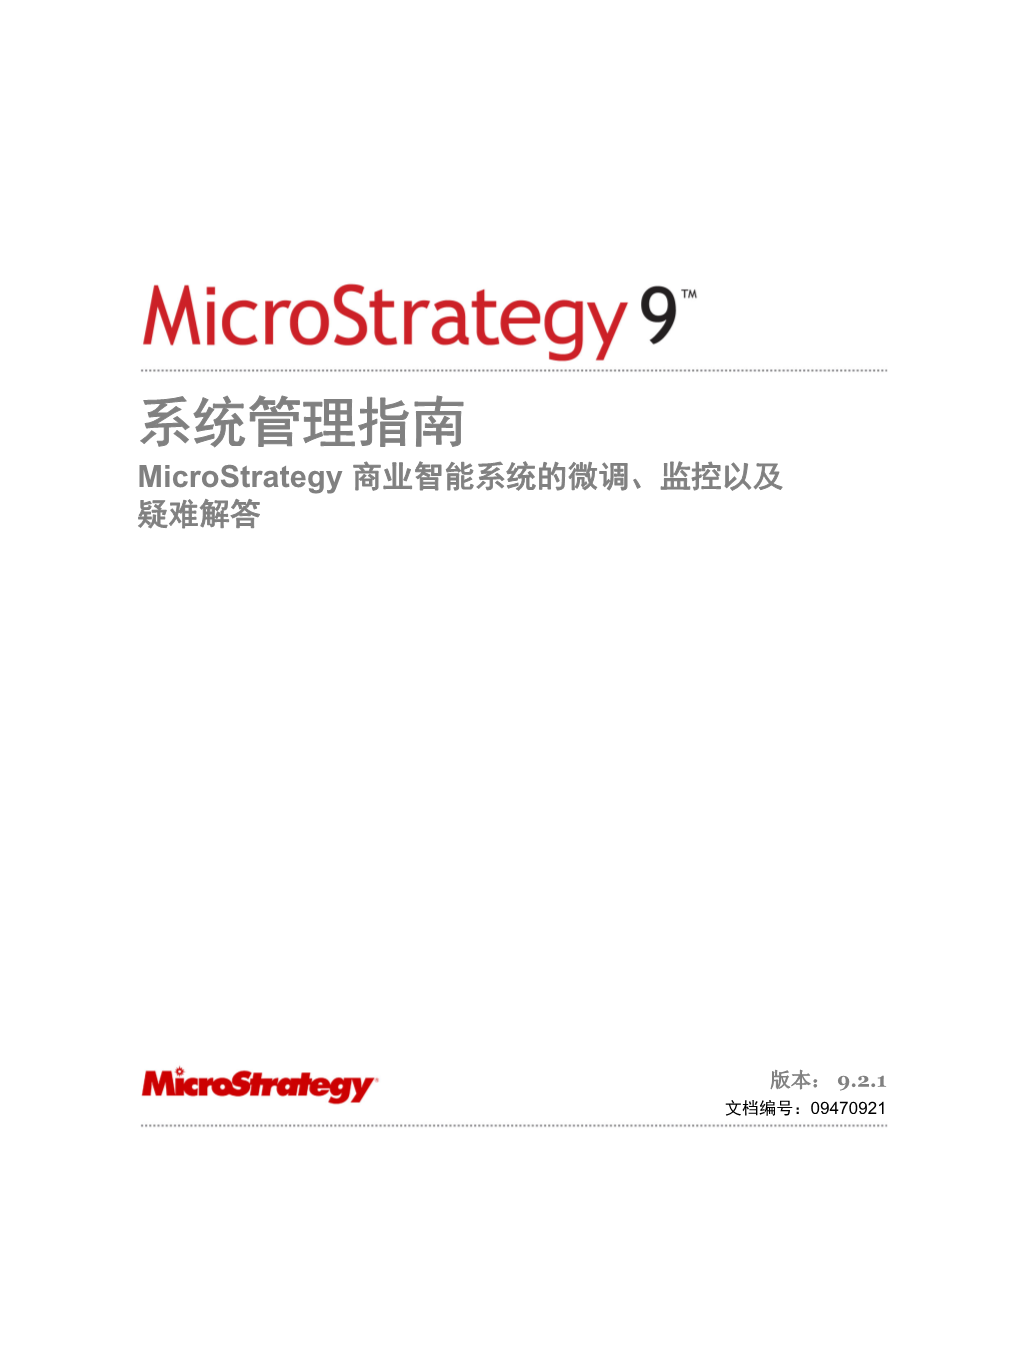 系统管理指南 Microstrategy 商业智能系统的微调、监控以及 疑难解答